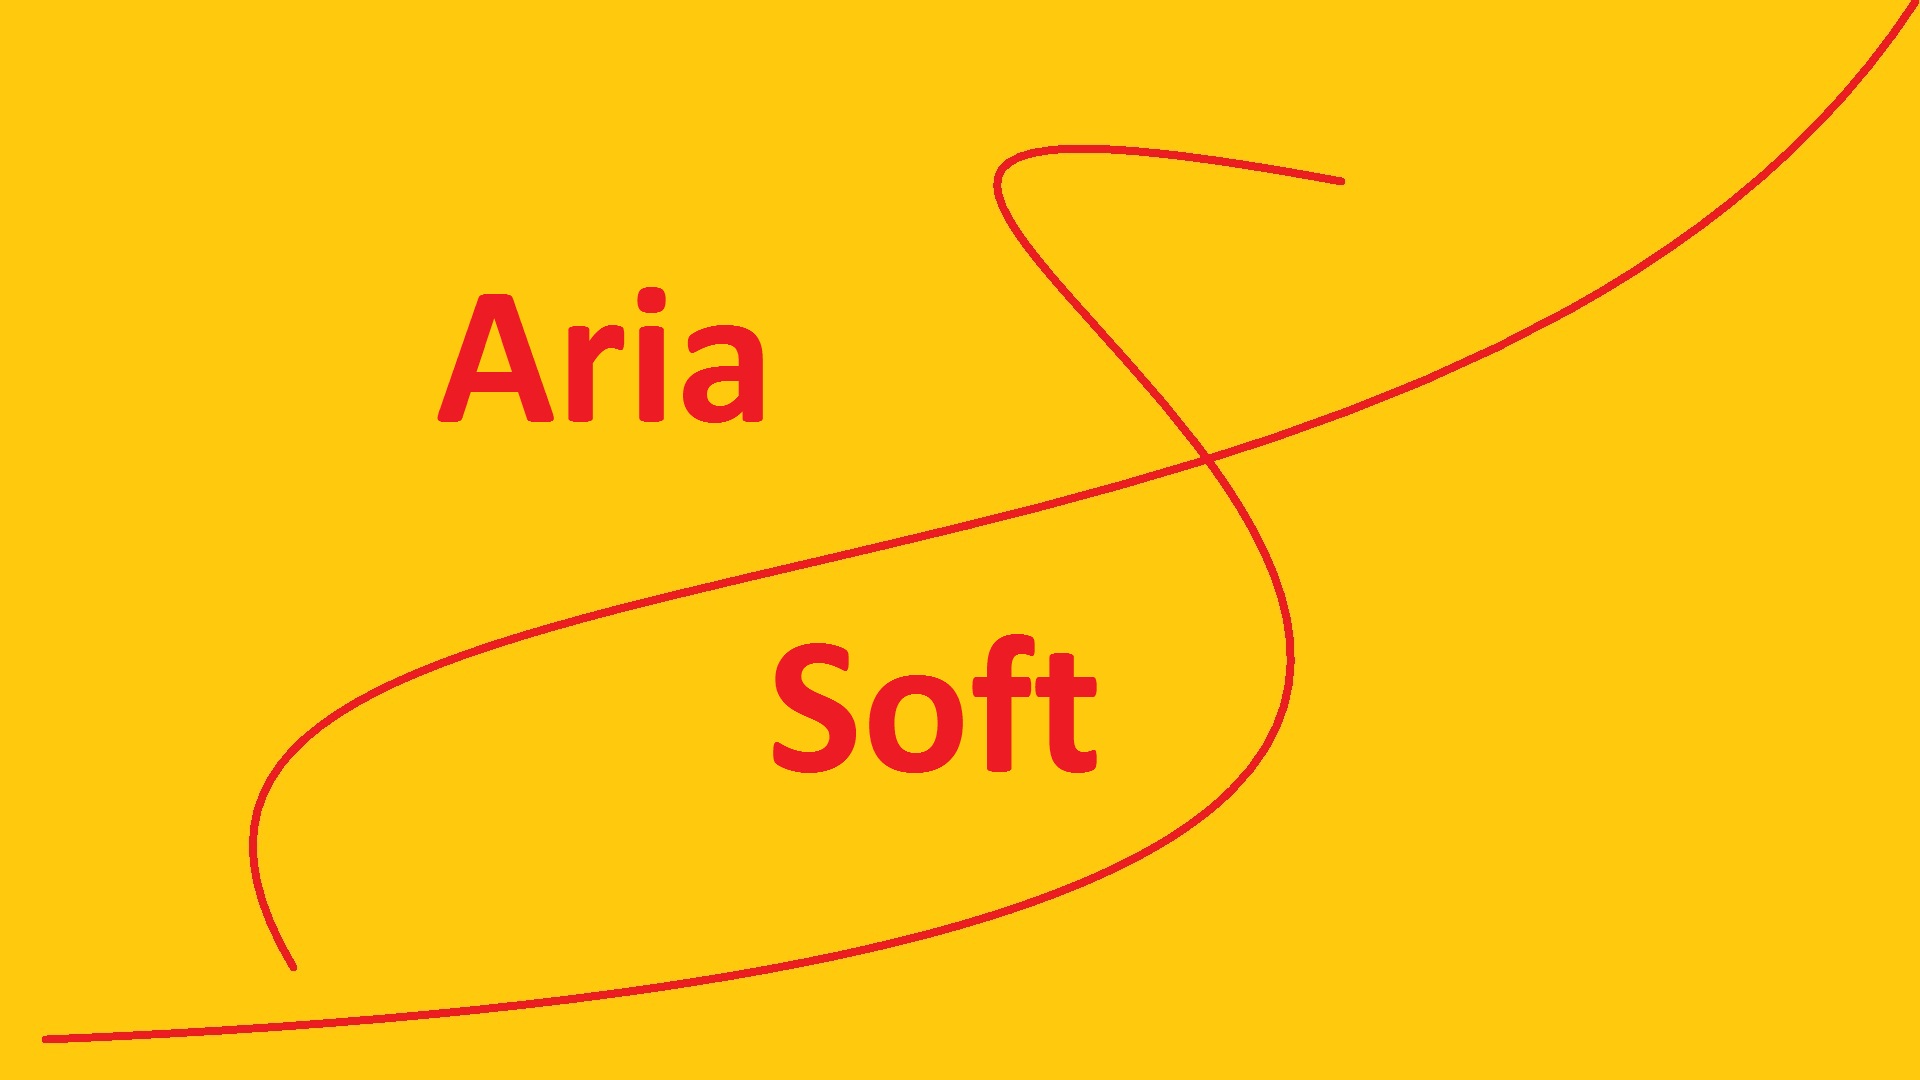 Aria Soft